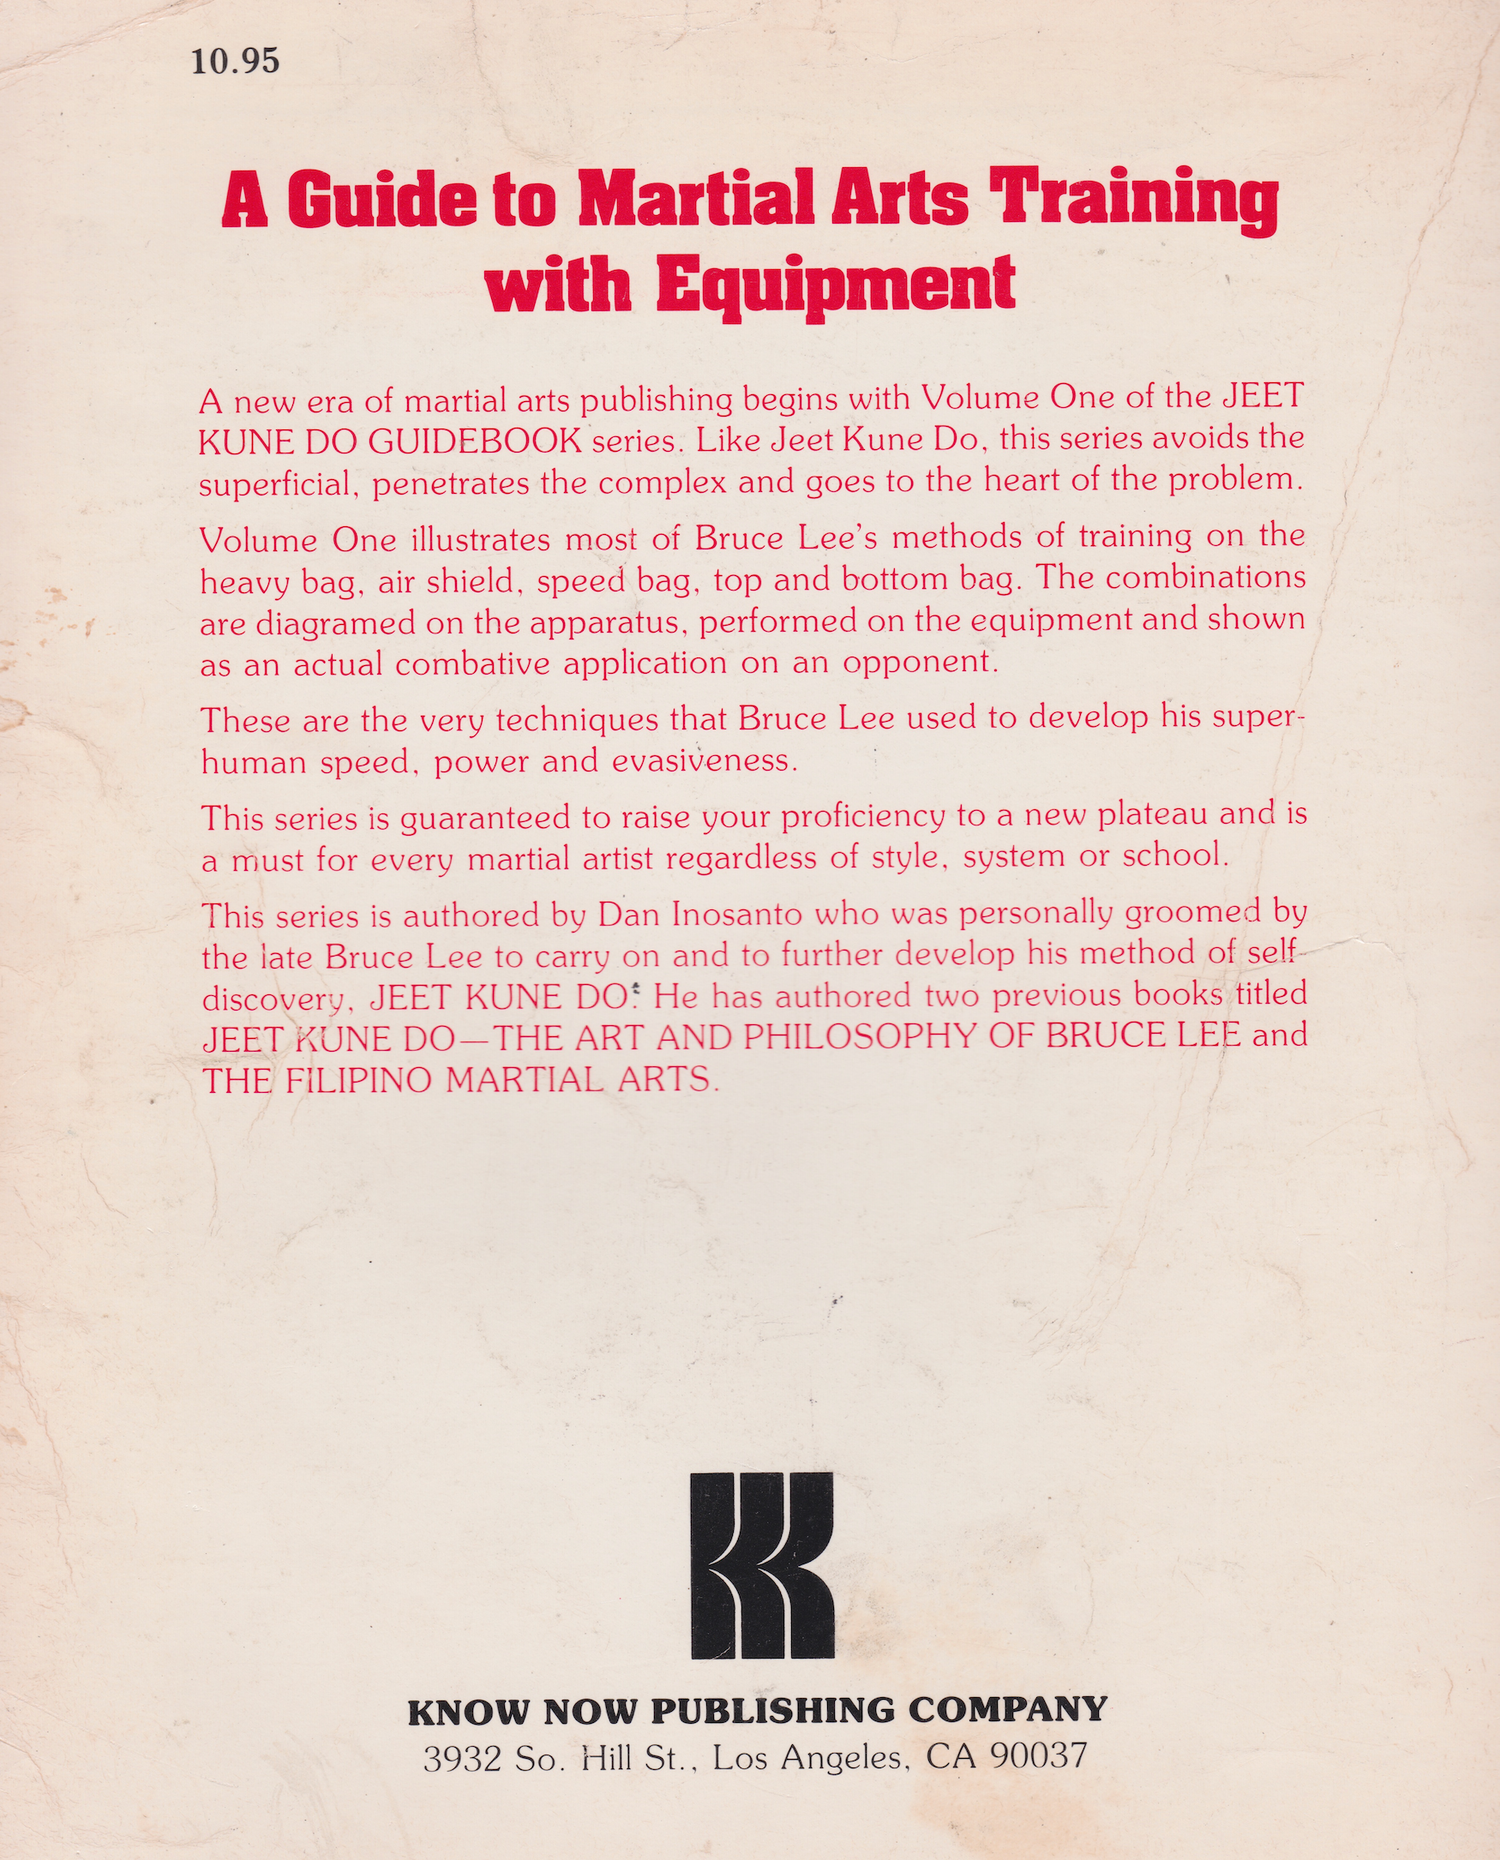 Guía de Jeet Kune Do 1: Una guía para el entrenamiento de artes marciales con libro de equipo de Dan Inosanto (usado) 